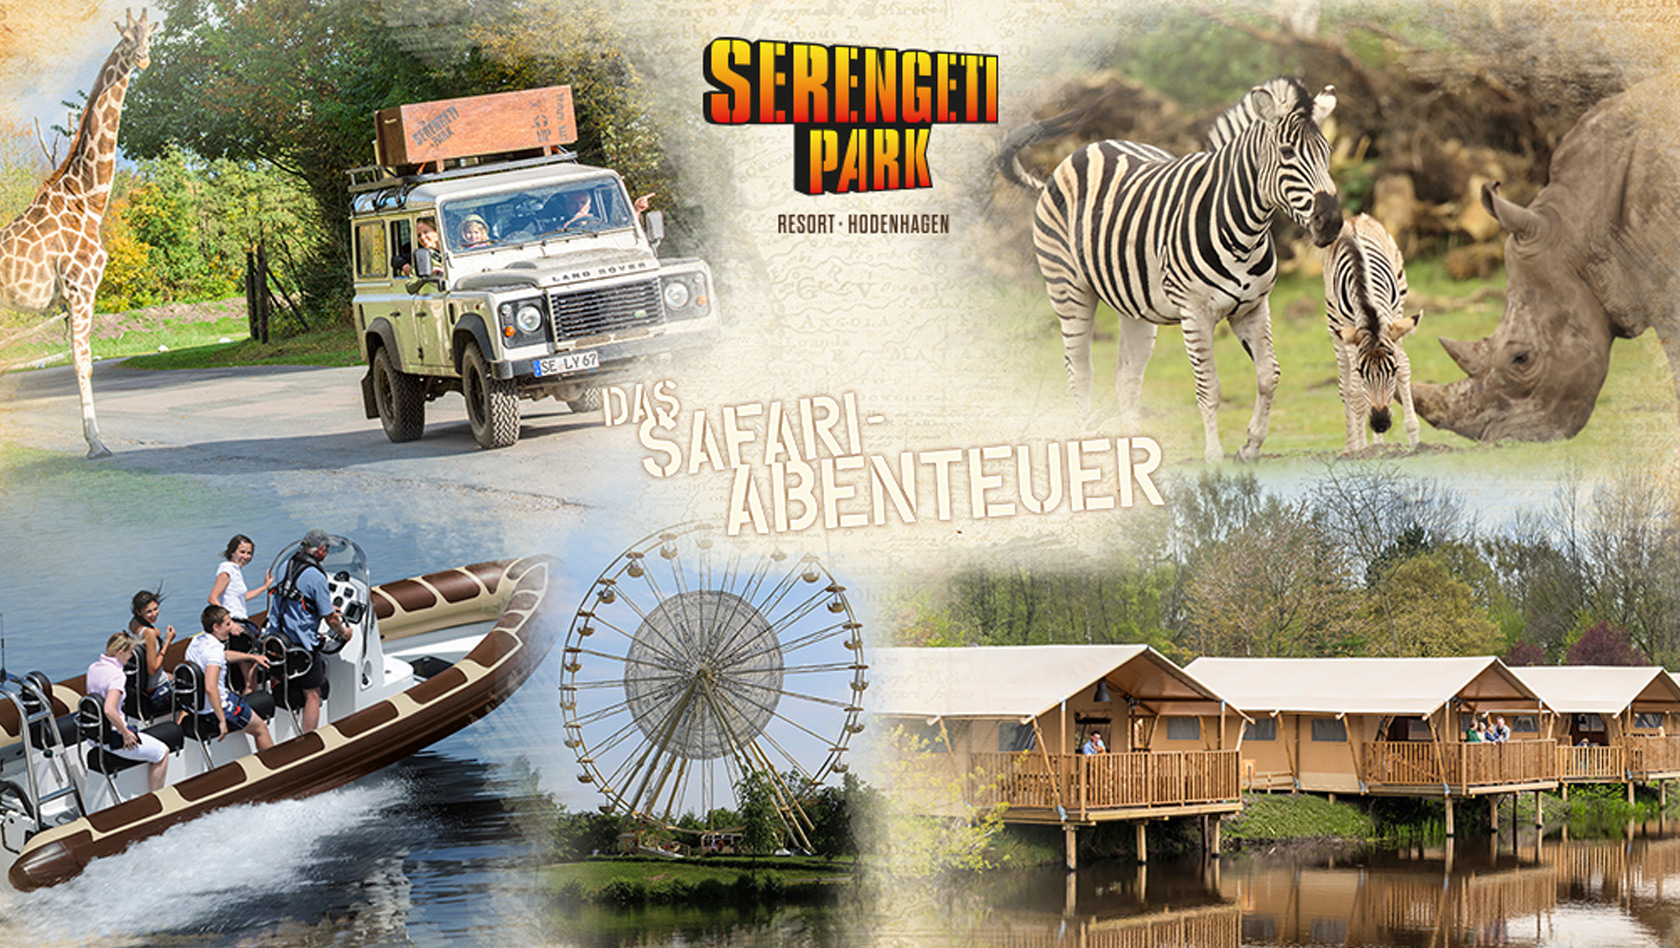 3 Tage Serengeti Park - Eintritt & Übernachtung TOP Angebot